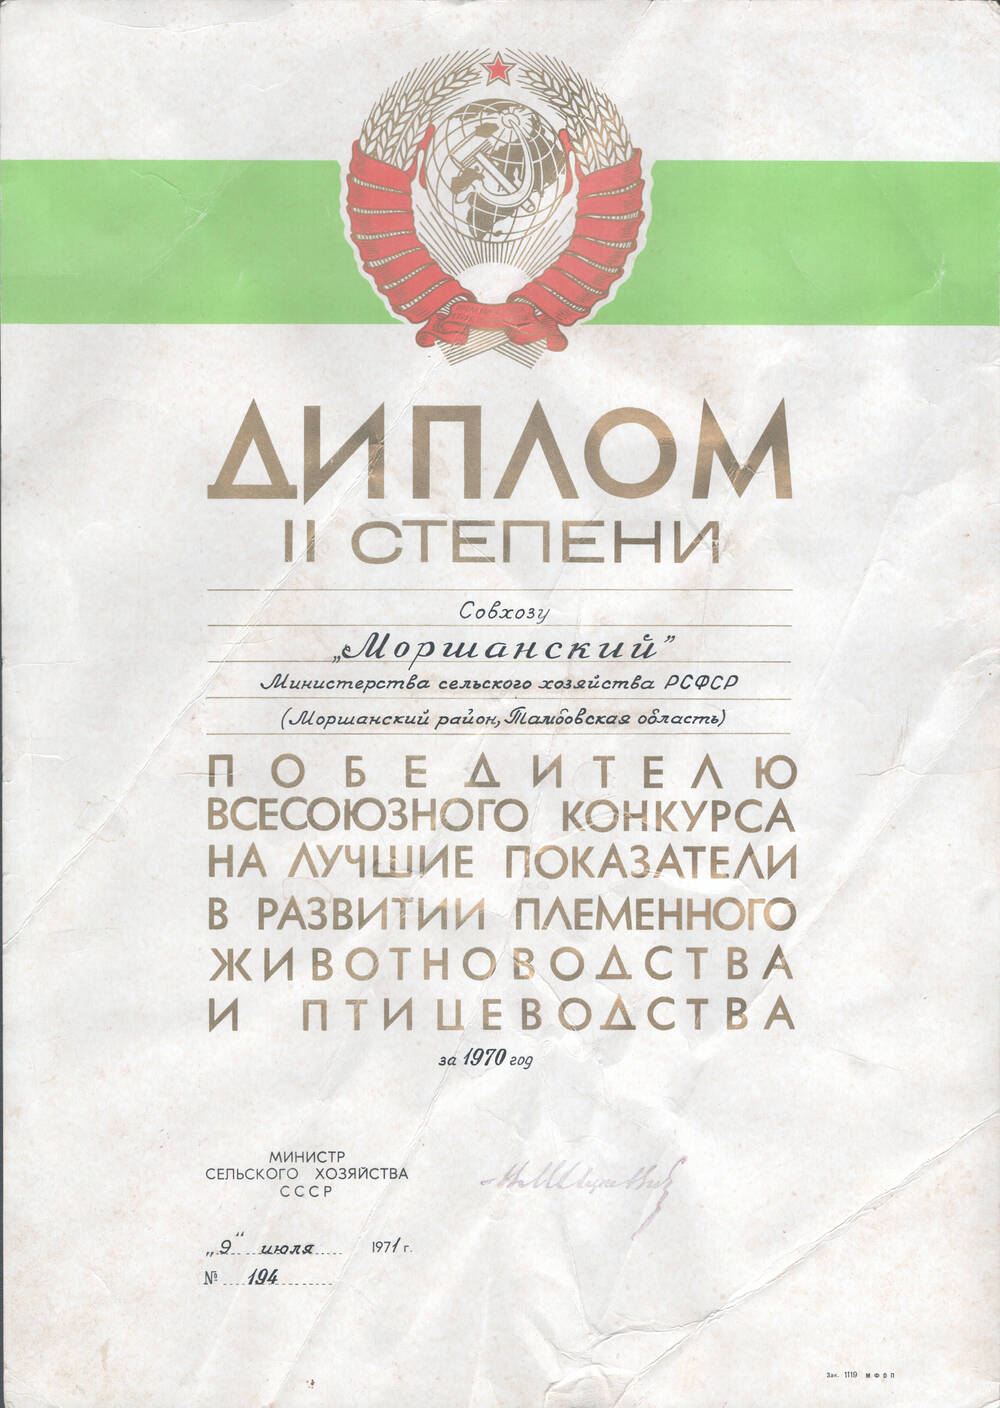 Диплом II степени совхозу «Моршанский», победителю всесоюзного конкурса на лучшие показатели в развитии племенного животноводства и птицеводства за 1970 г.